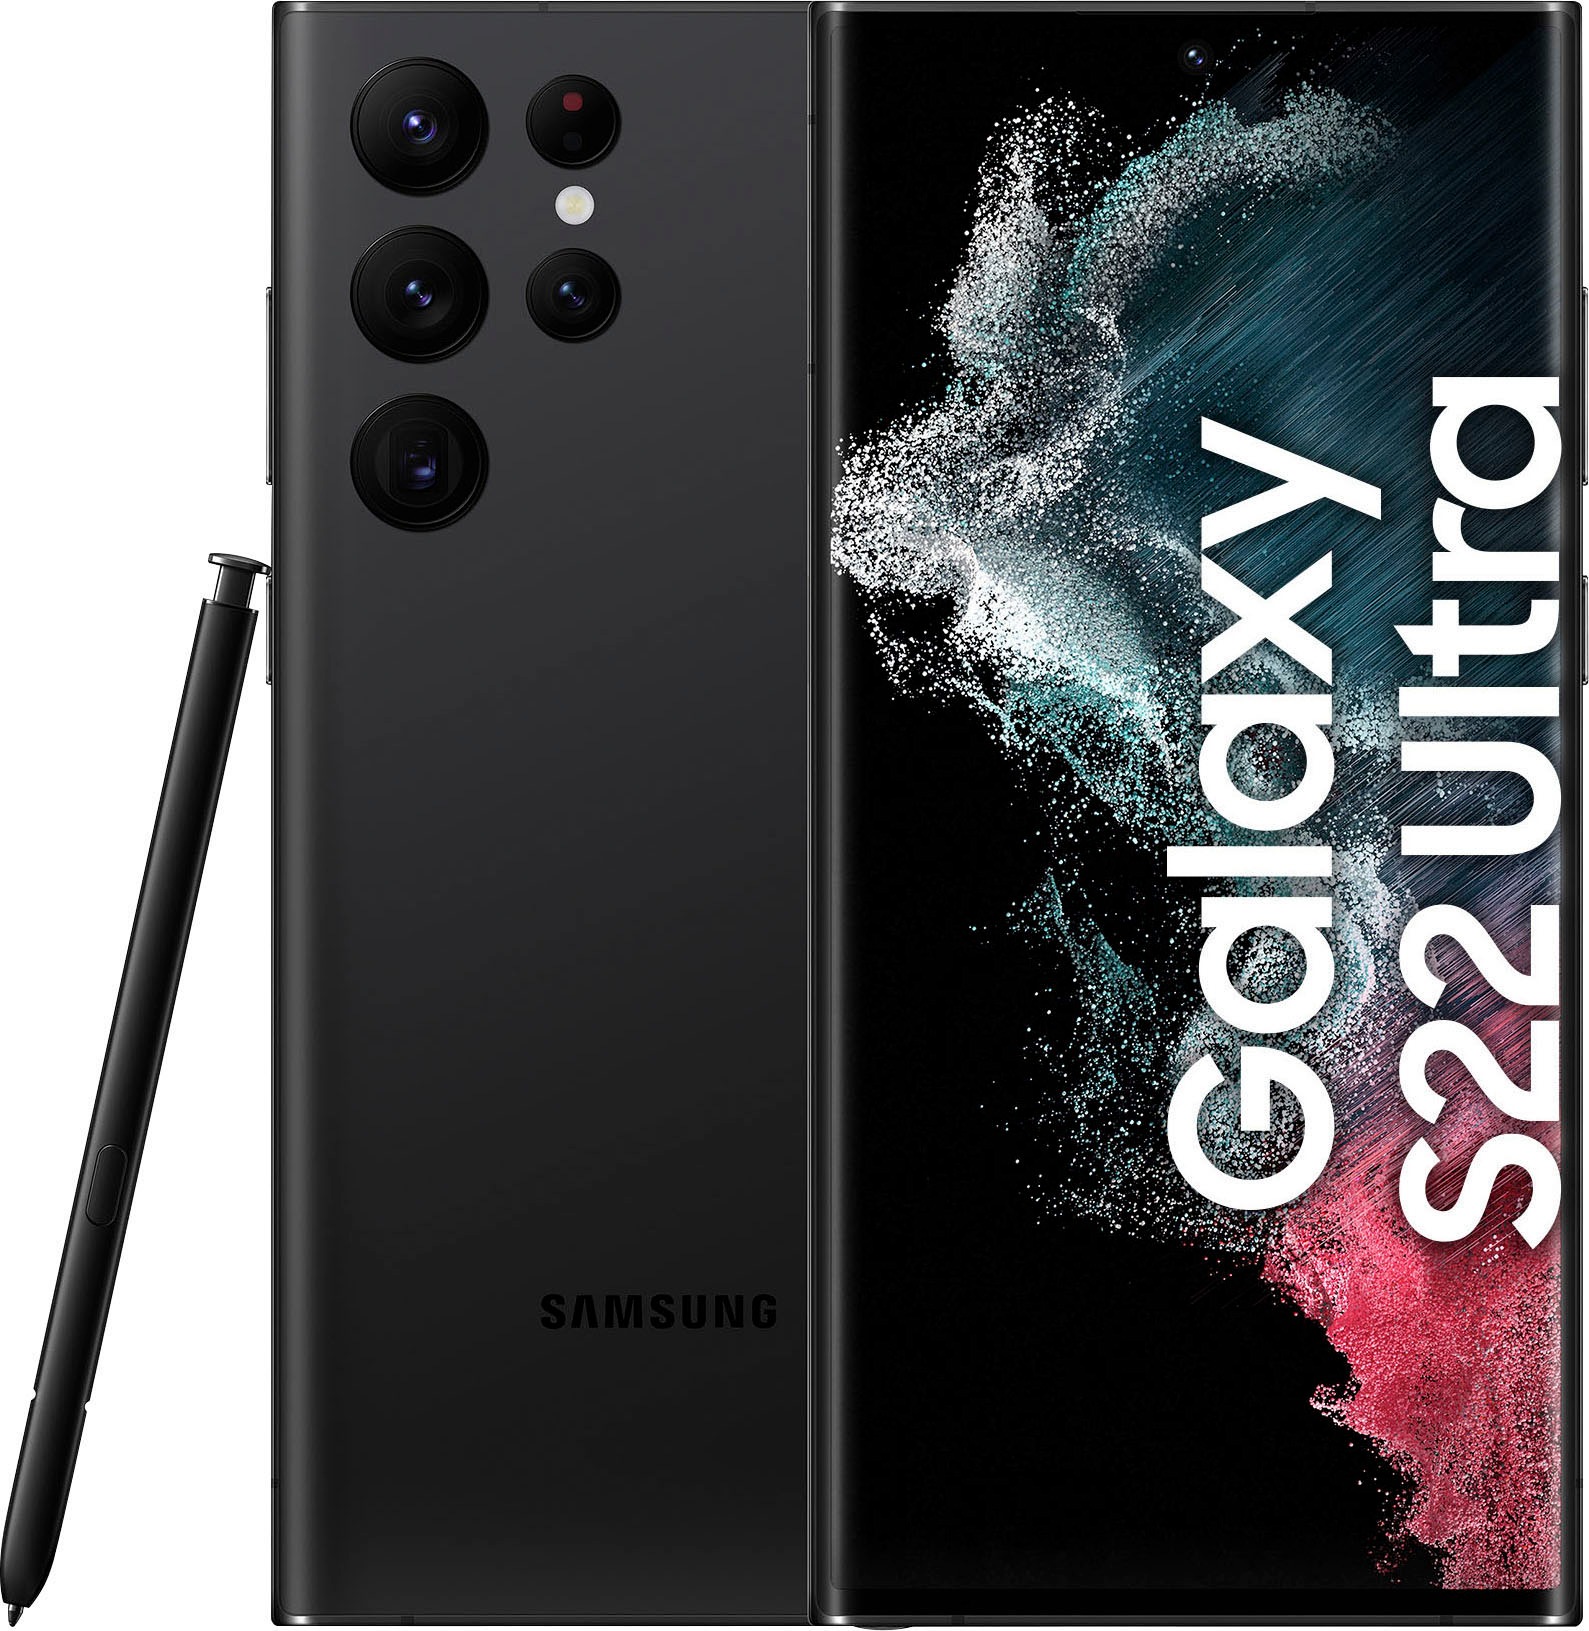 Samsung Smartphone »Galaxy S22 Ultra«, Green, 17,31 cm/6,8 Zoll, 256 GB  Speicherplatz, 108 MP Kamera auf Raten kaufen | alle Smartphones